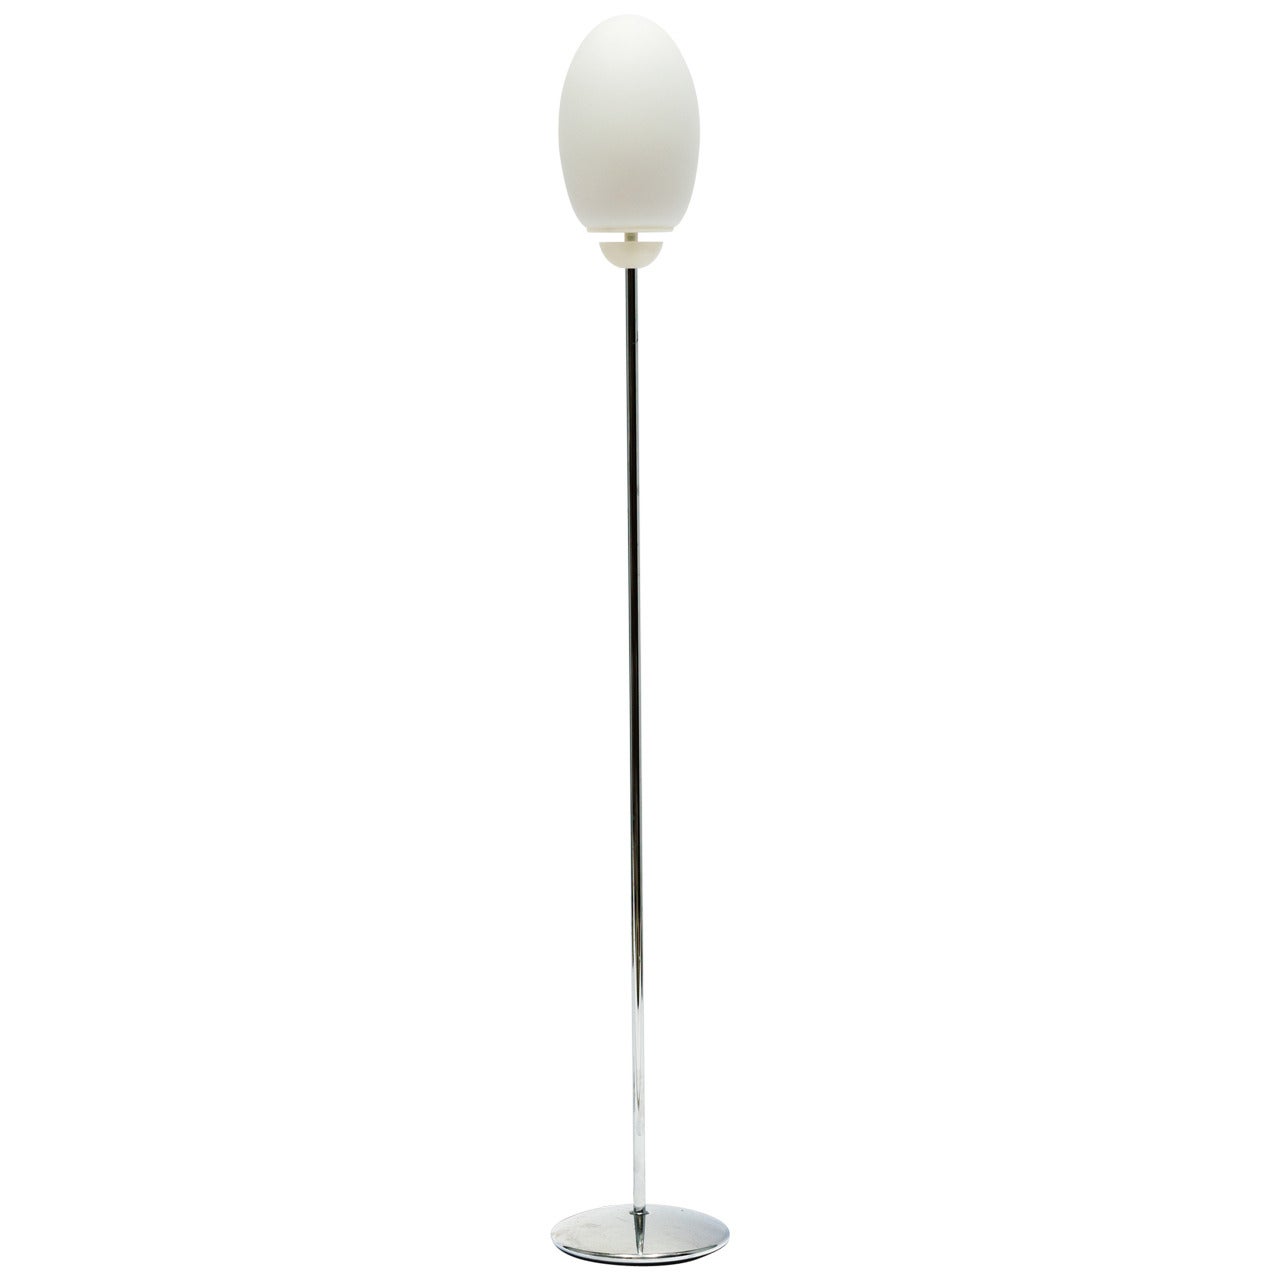 Flos Brera Floor Lamp, Designed by Achille Castiglioni